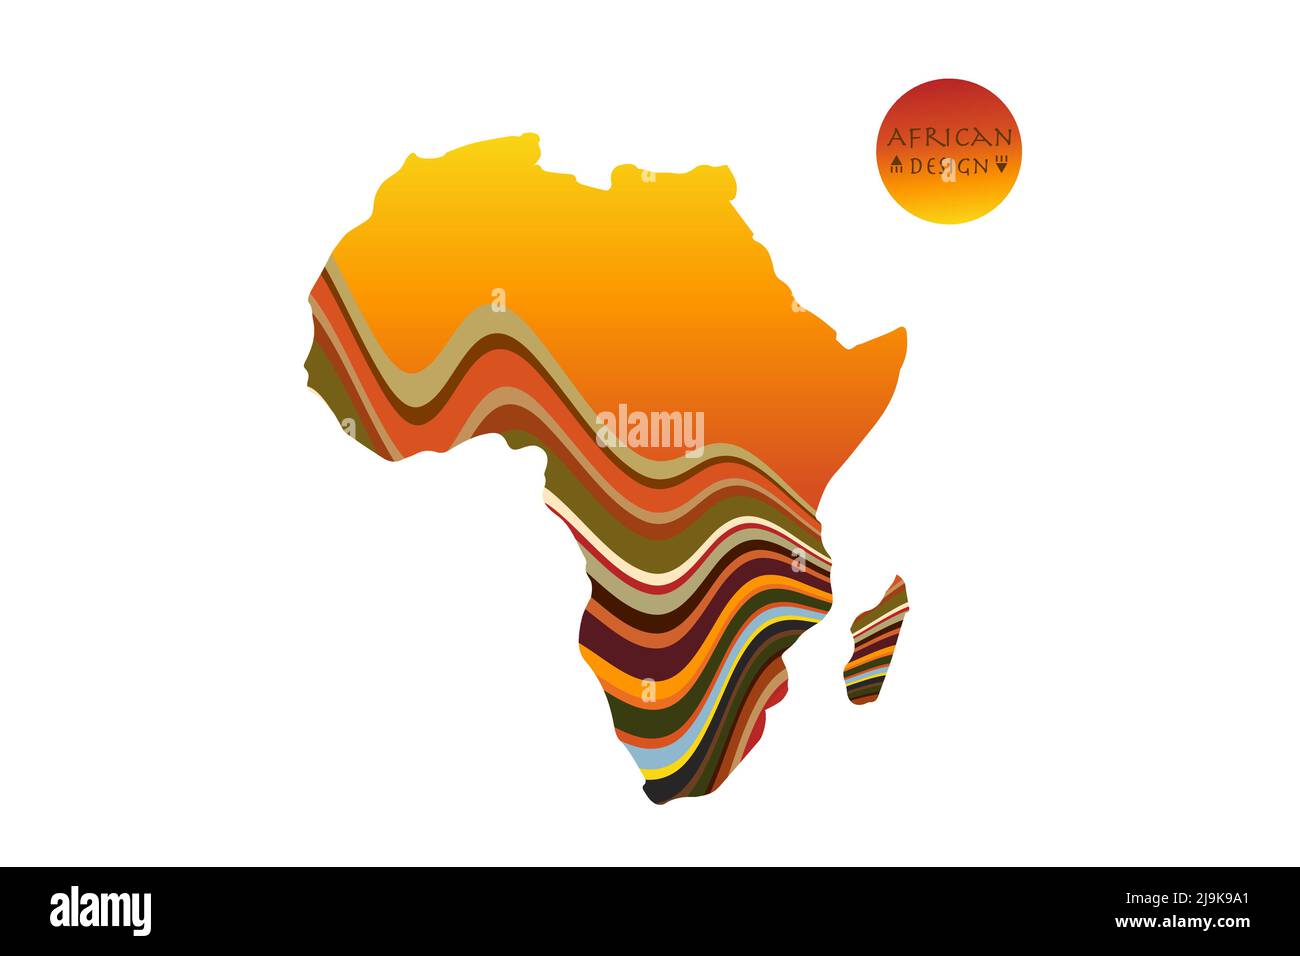 Africa mappa modellata con paesaggio etnico tramonto. Banner con logo, colori tradizionali africani tribali, elementi motivo a strisce, concept design. Vettore Illustrazione Vettoriale